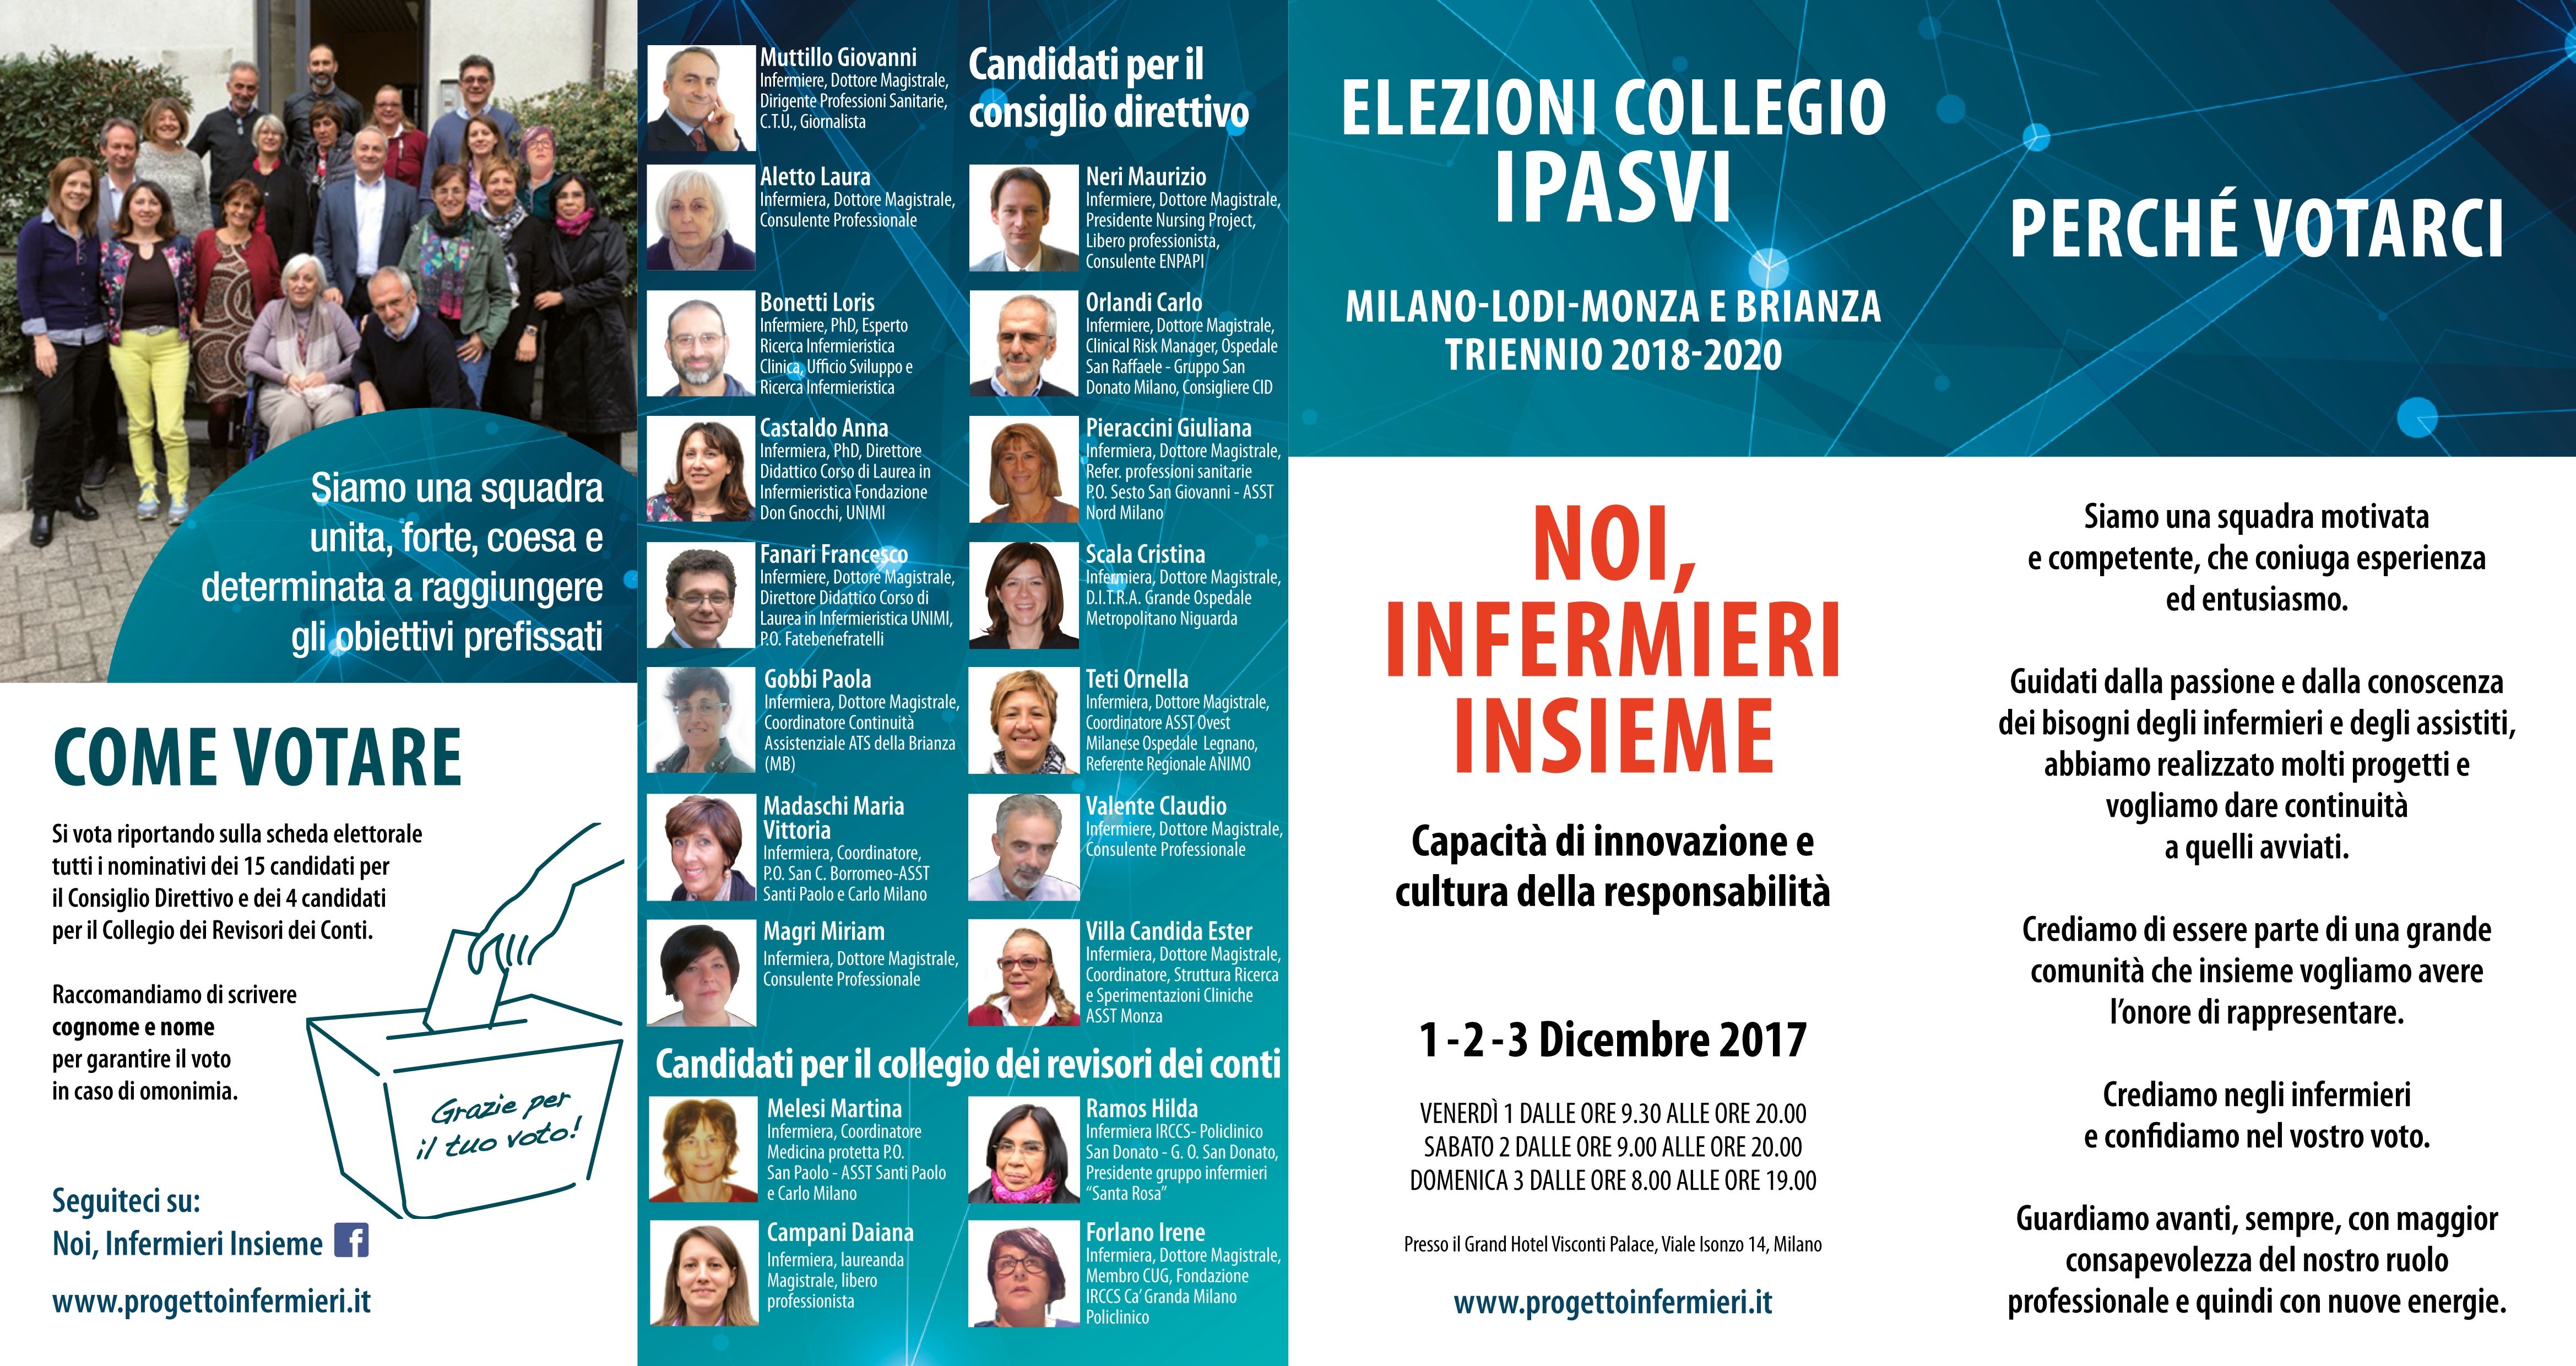 Il collegio Ipasvi di Milano, Lodi, Monza e Brianza si rinnova con la lista "Noi, infermieri Insieme"